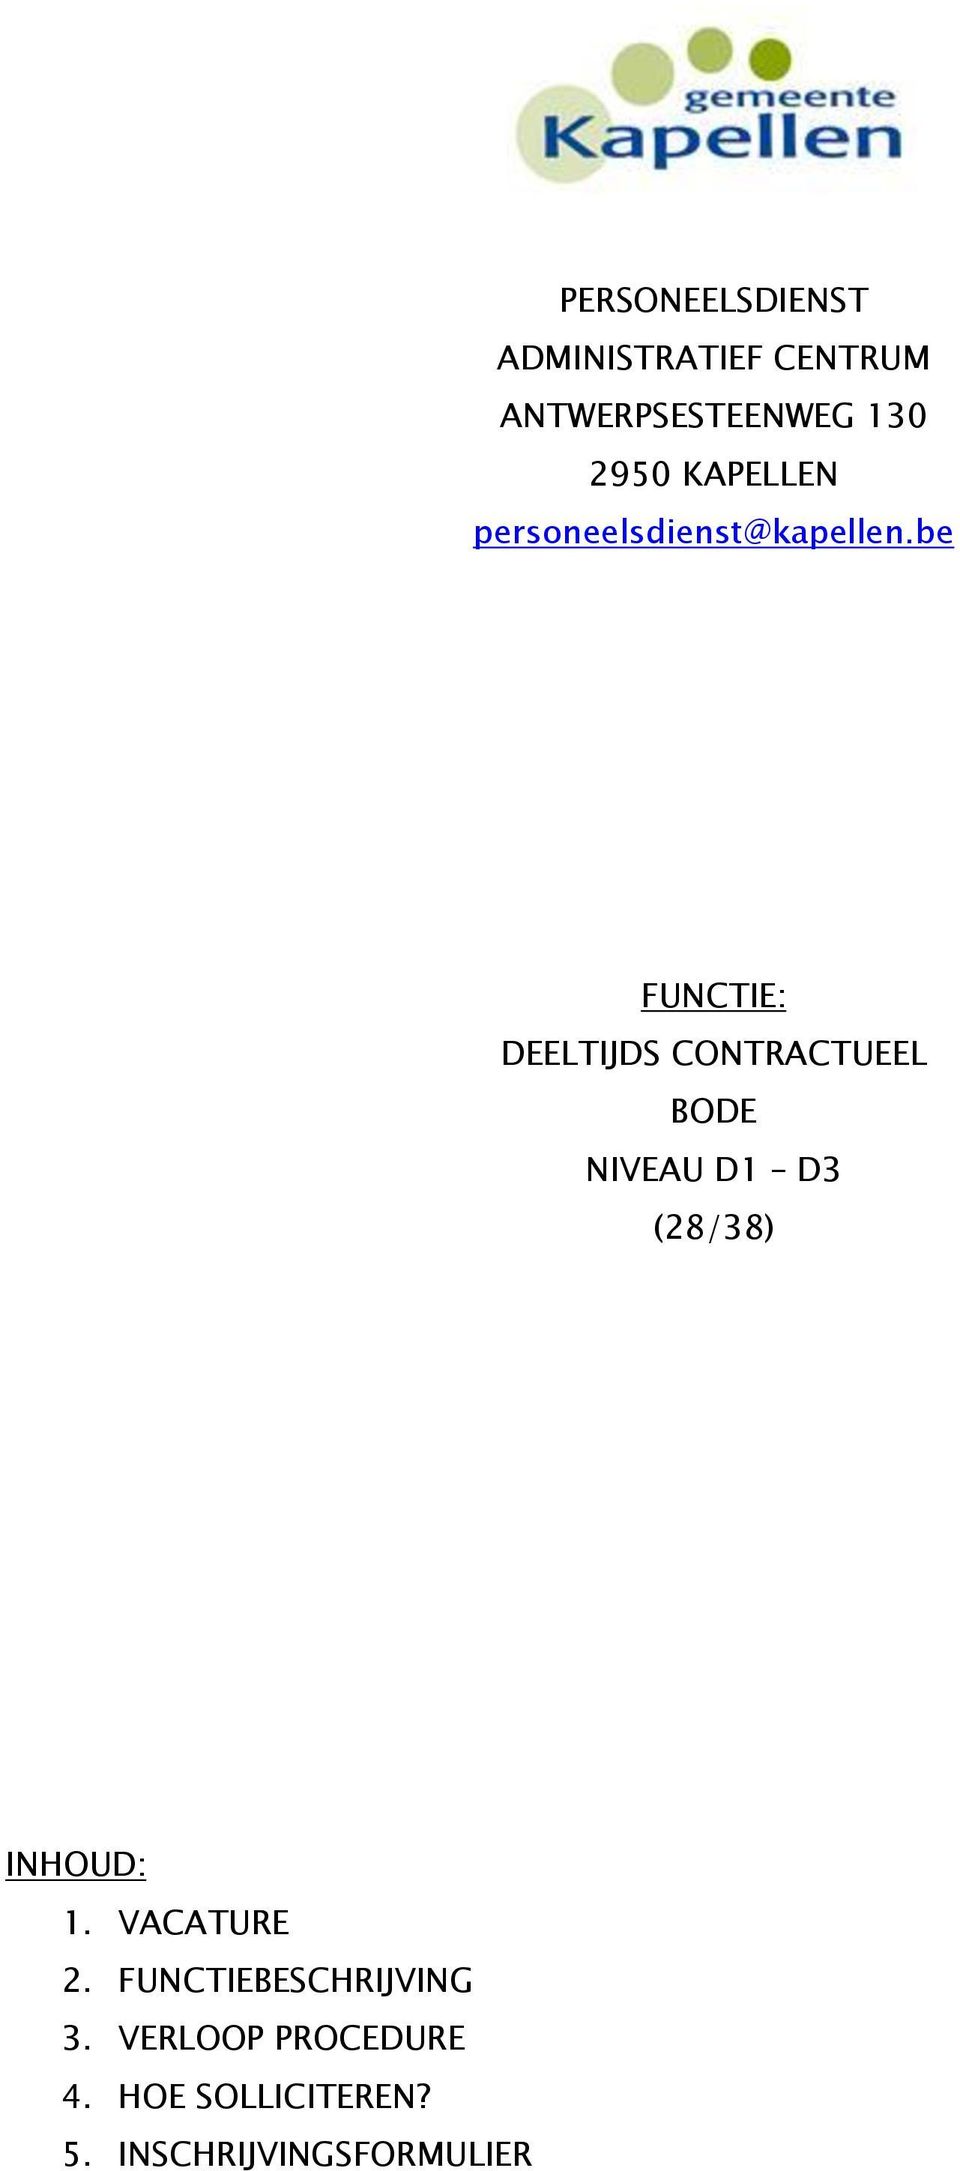 be FUNCTIE: DEELTIJDS CONTRACTUEEL BODE NIVEAU D1 D3 (28/38) INHOUD: